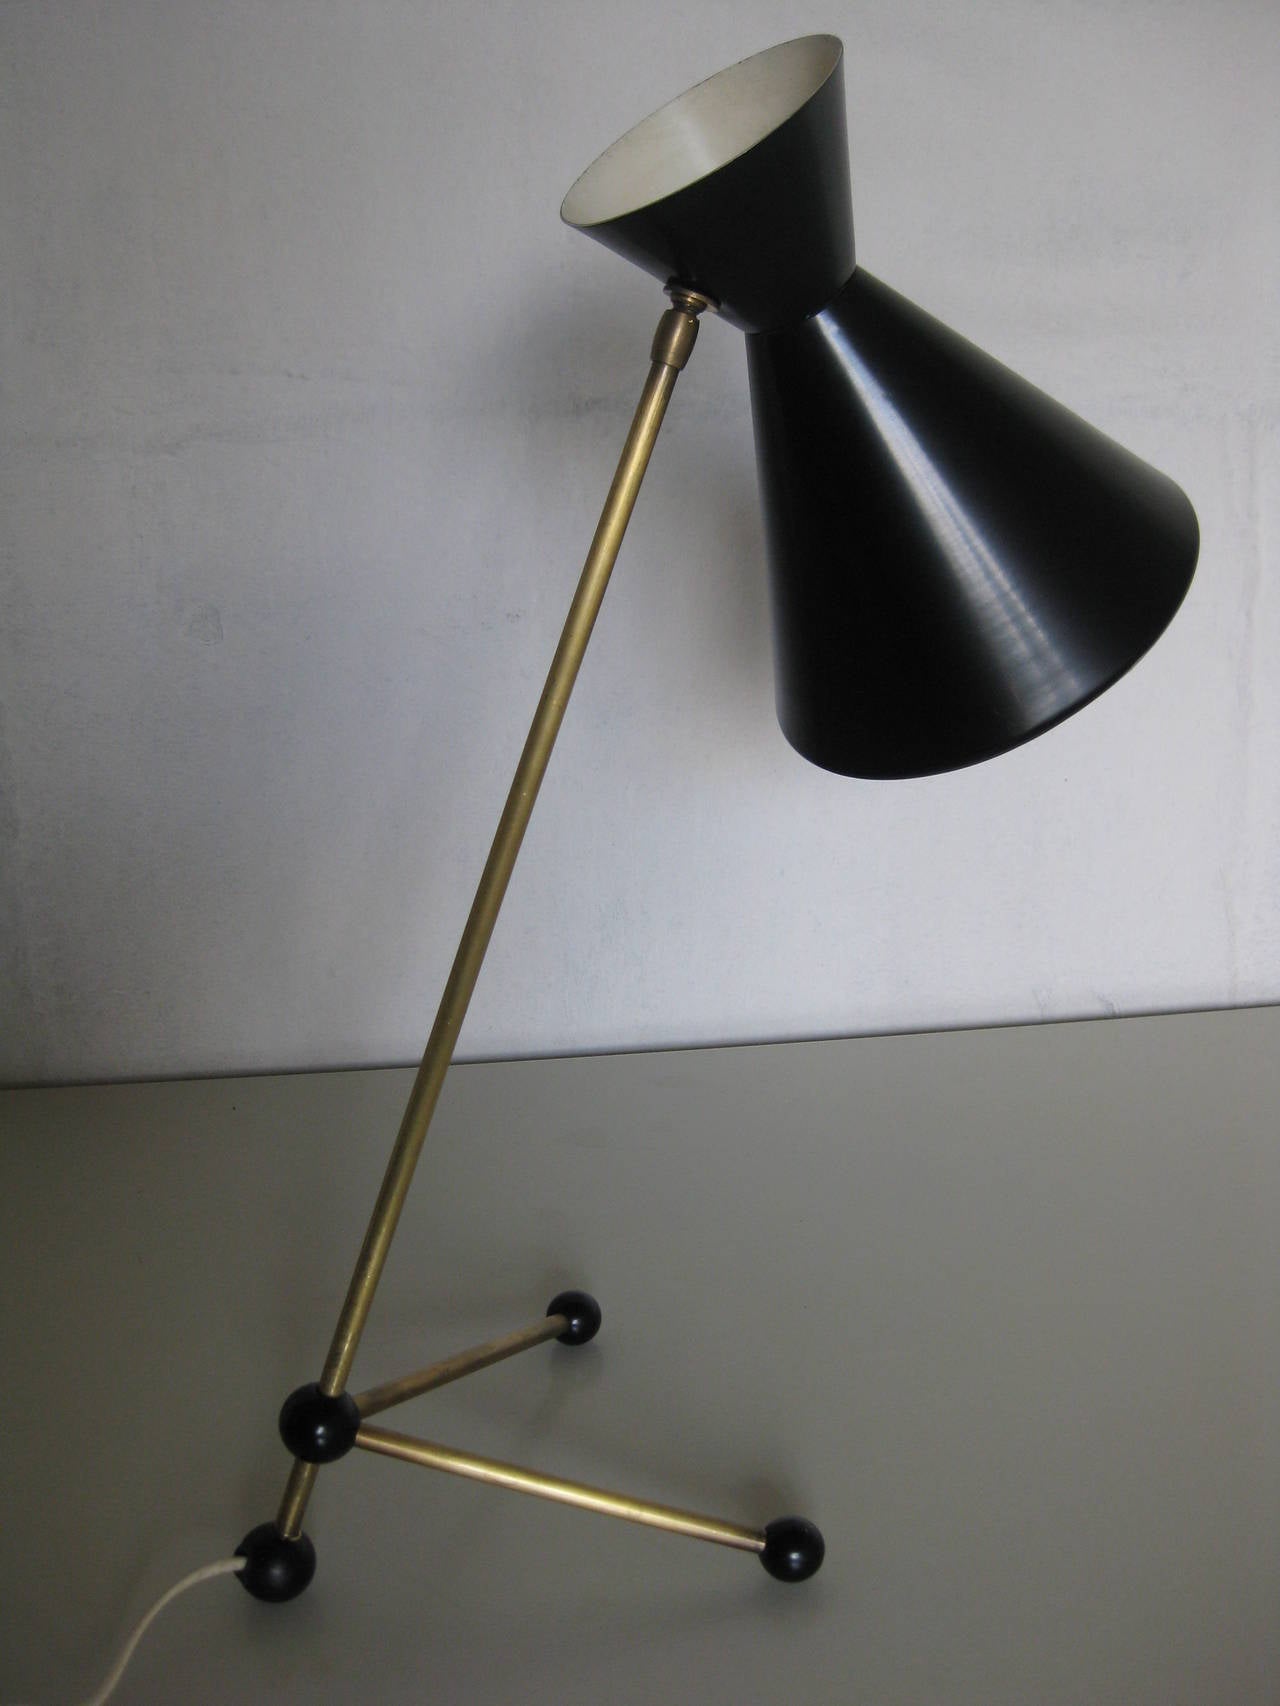 Très belle lampe de table des années 50 probablement conçue par Otto Kolb 1951
Tige et pieds en laiton avec connecteur ajustable, abat-jour en métal émaillé et pieds en plastique.